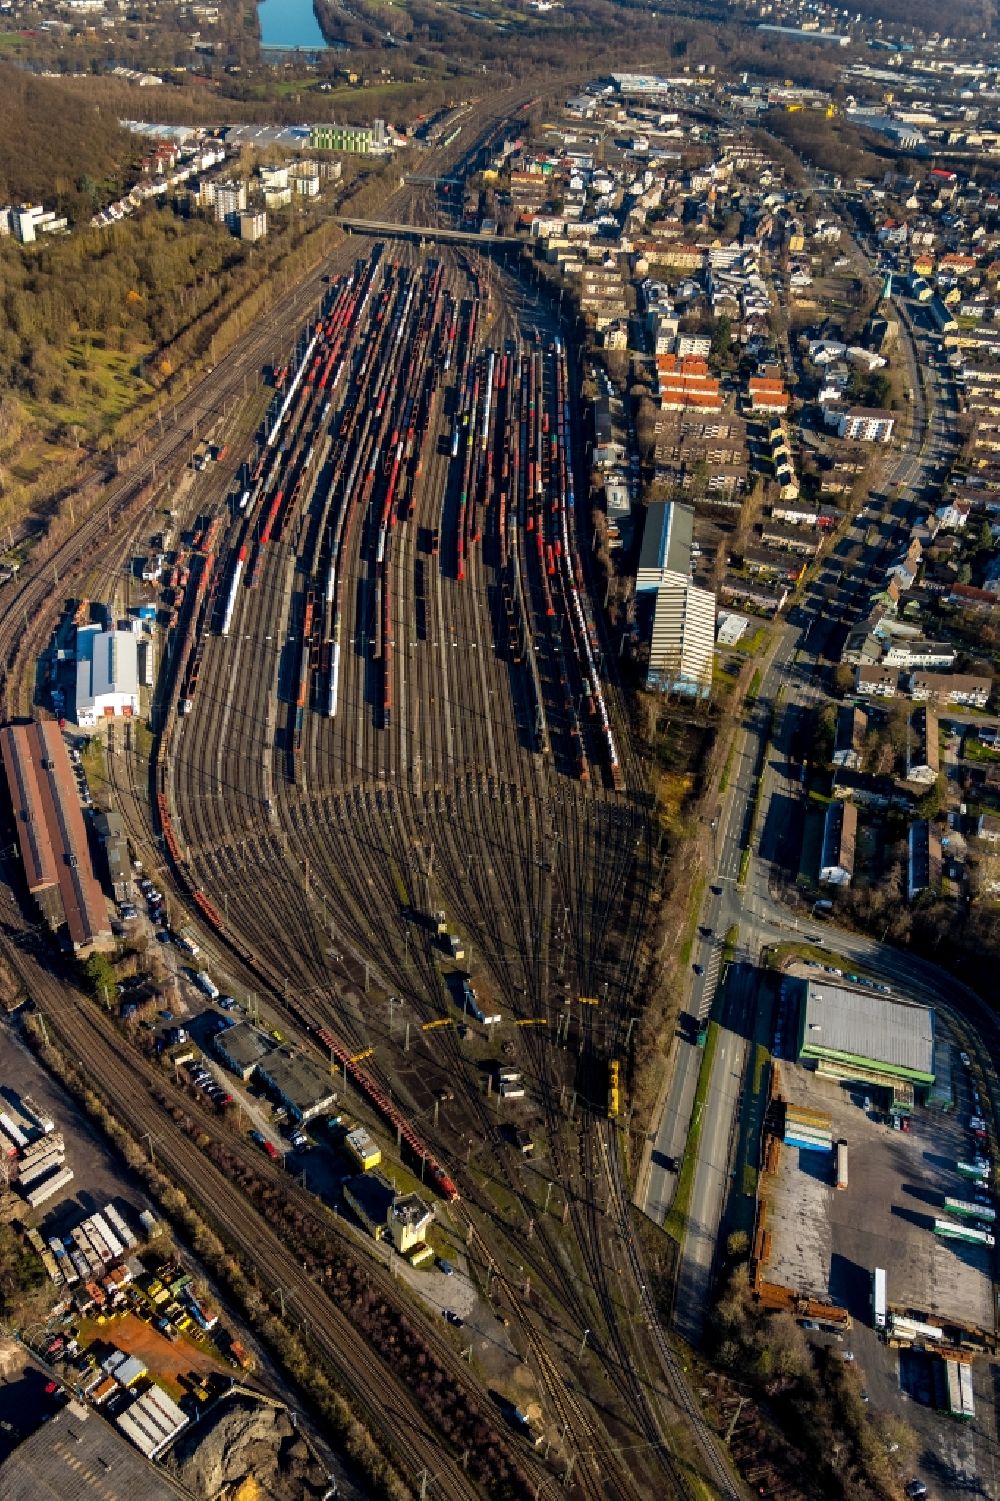 Luftaufnahme Hagen - Rangierbahnhof und Güterbahnhof der Deutschen Bahn in Hagen im Bundesland Nordrhein-Westfalen, Deutschland